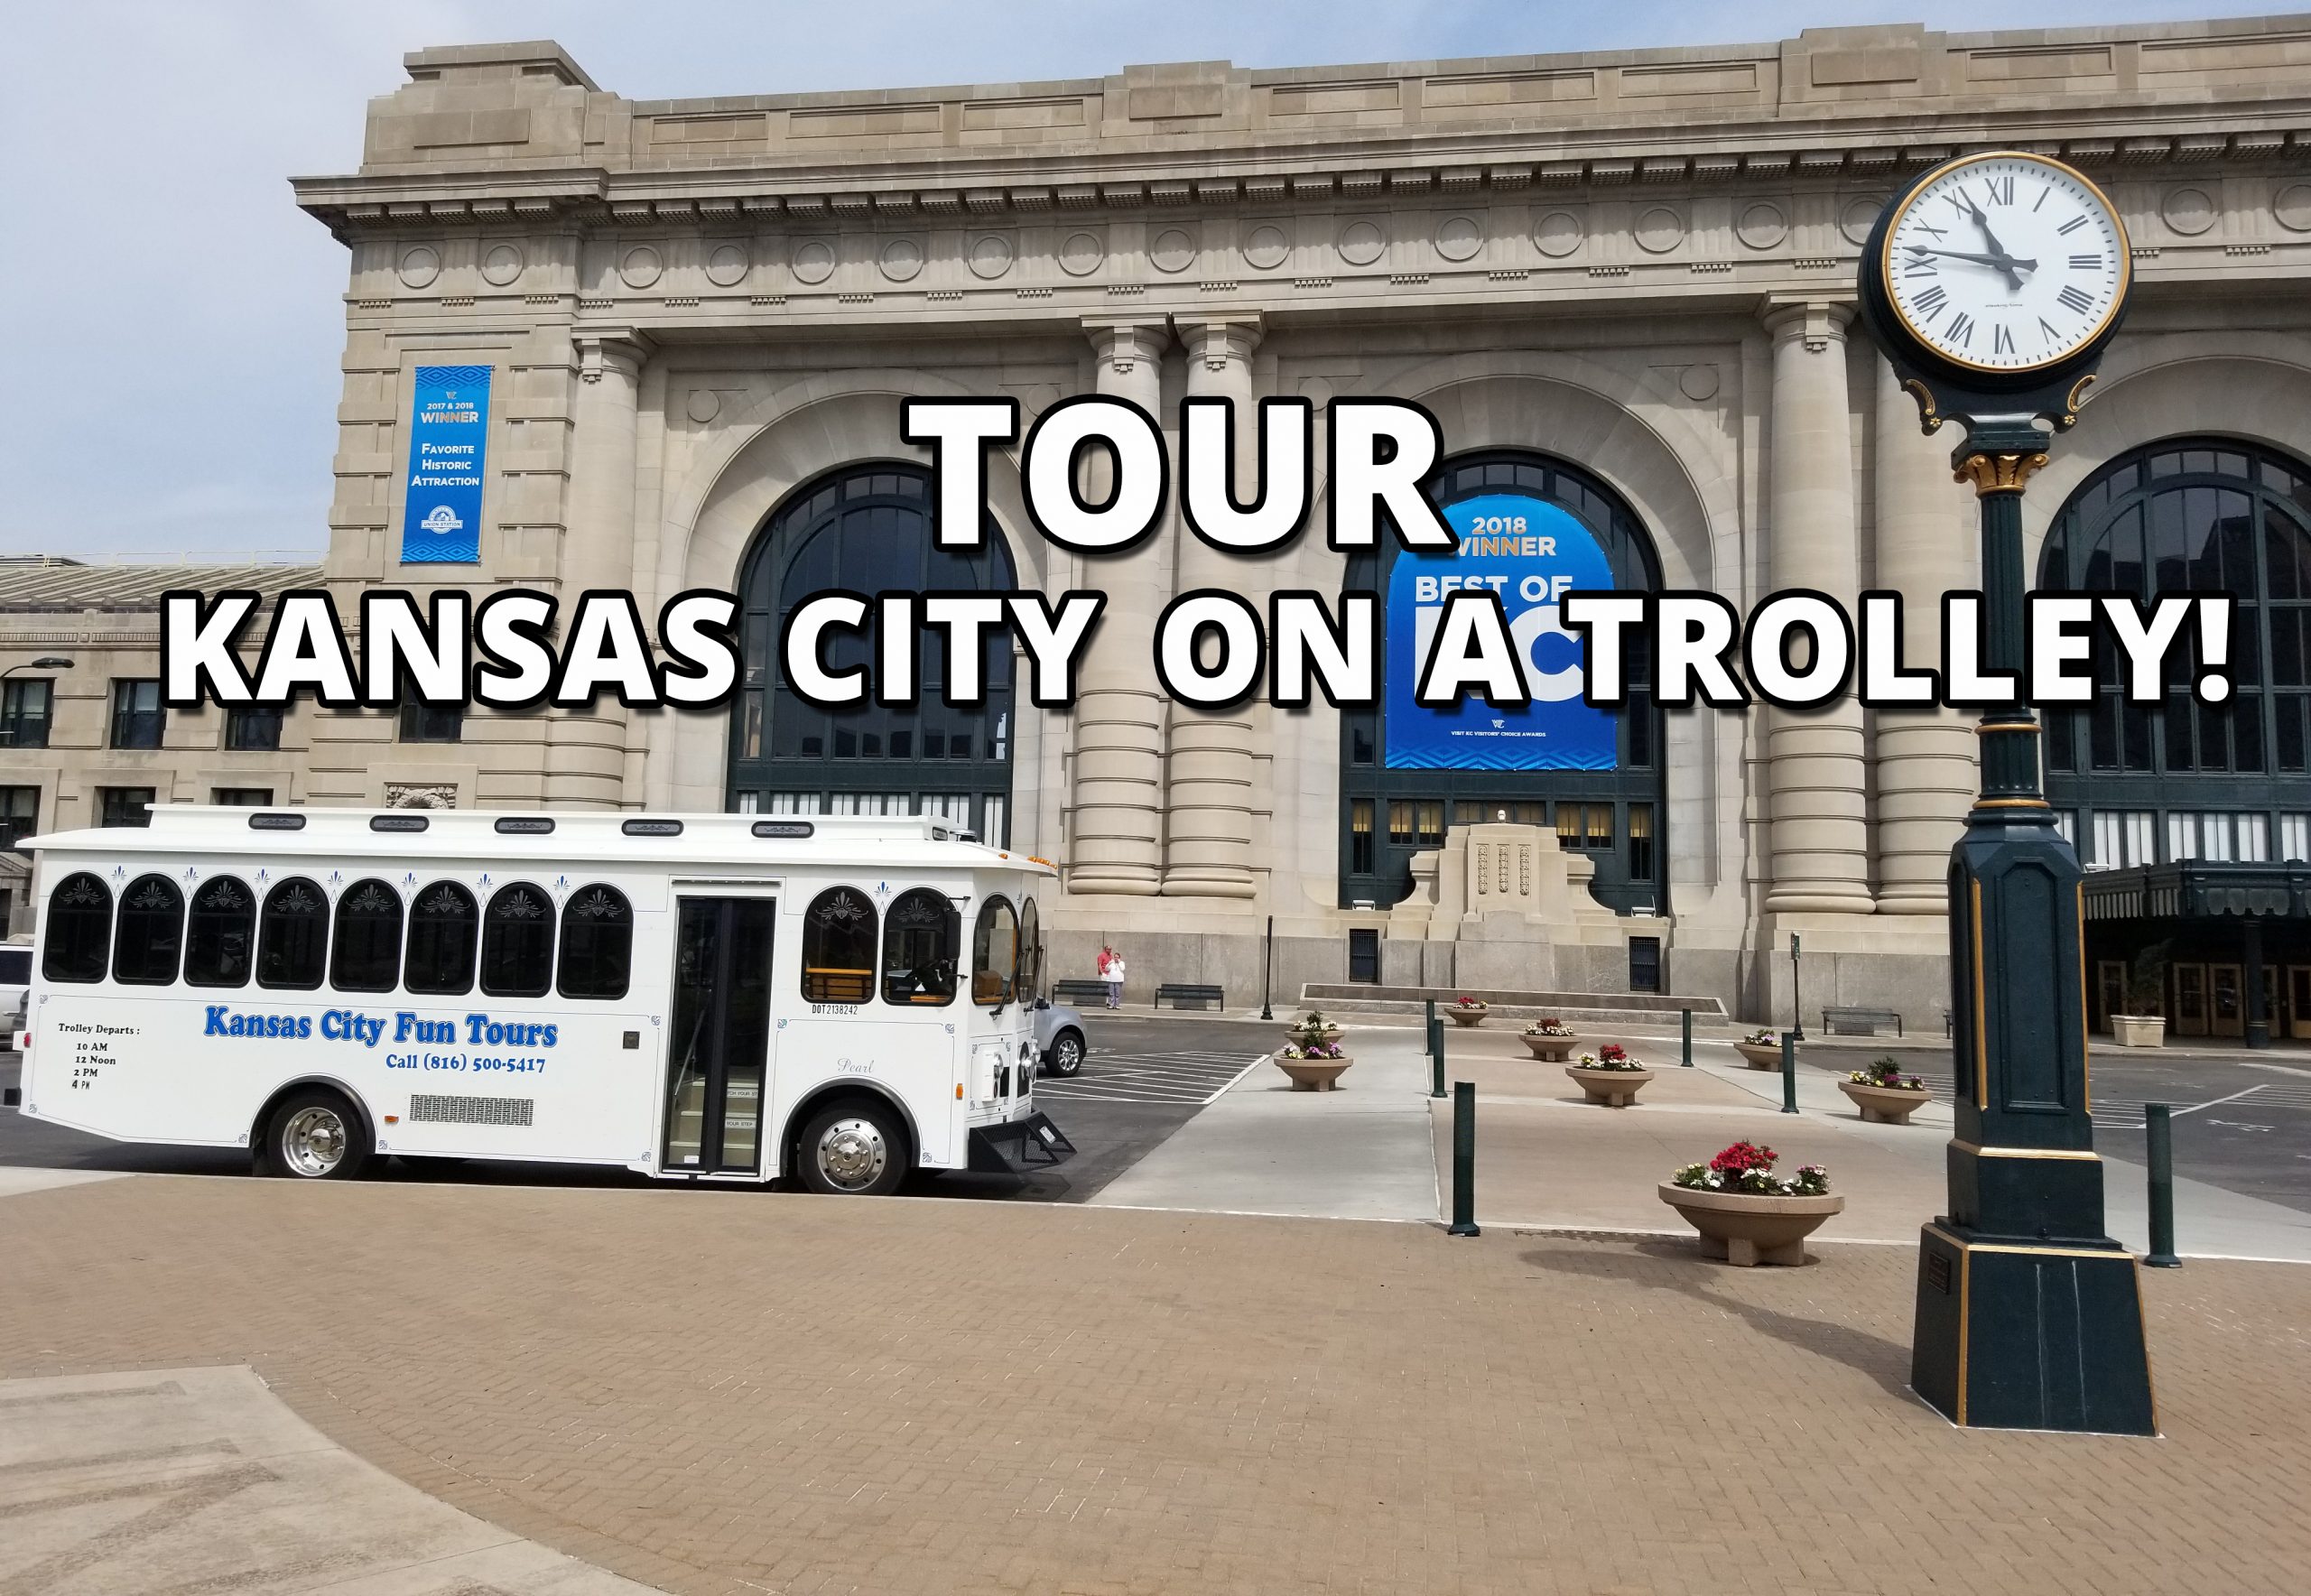 Kansas City Fun Tours